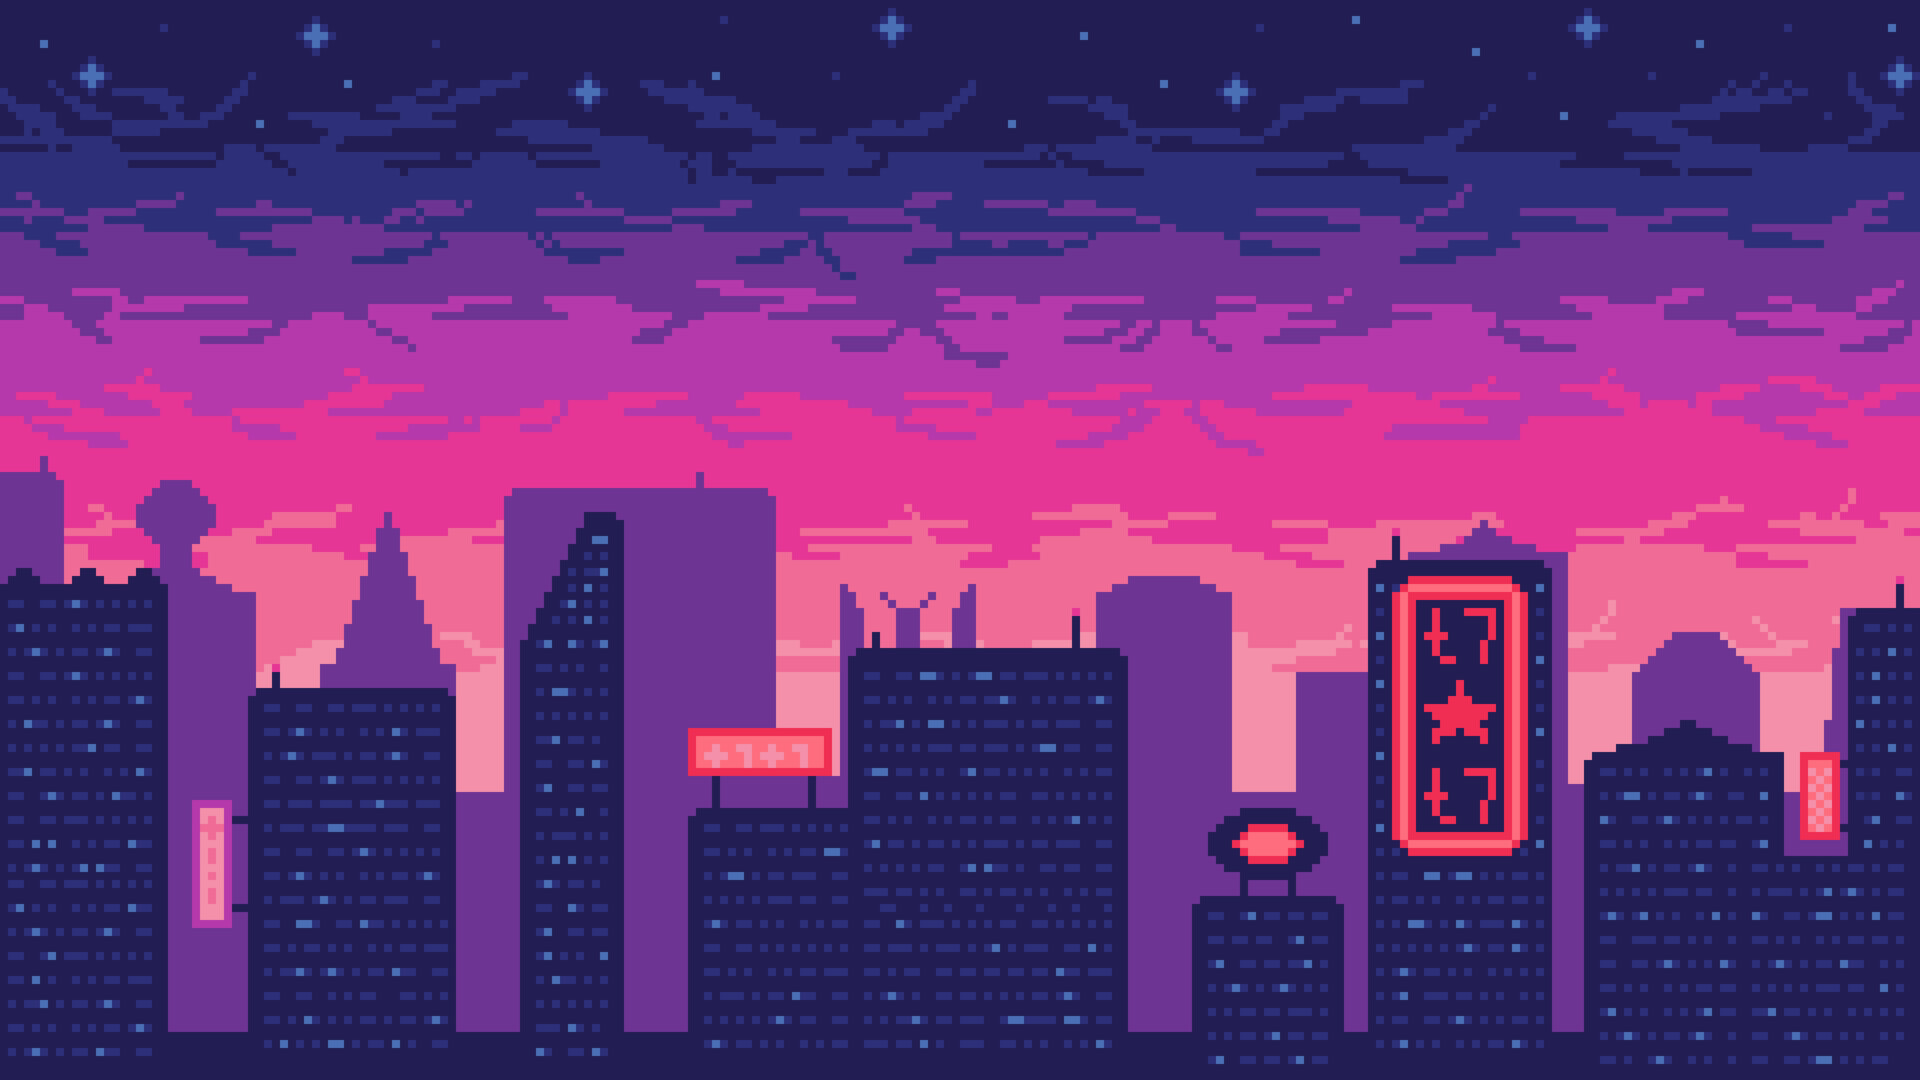 ArtStation - Night city